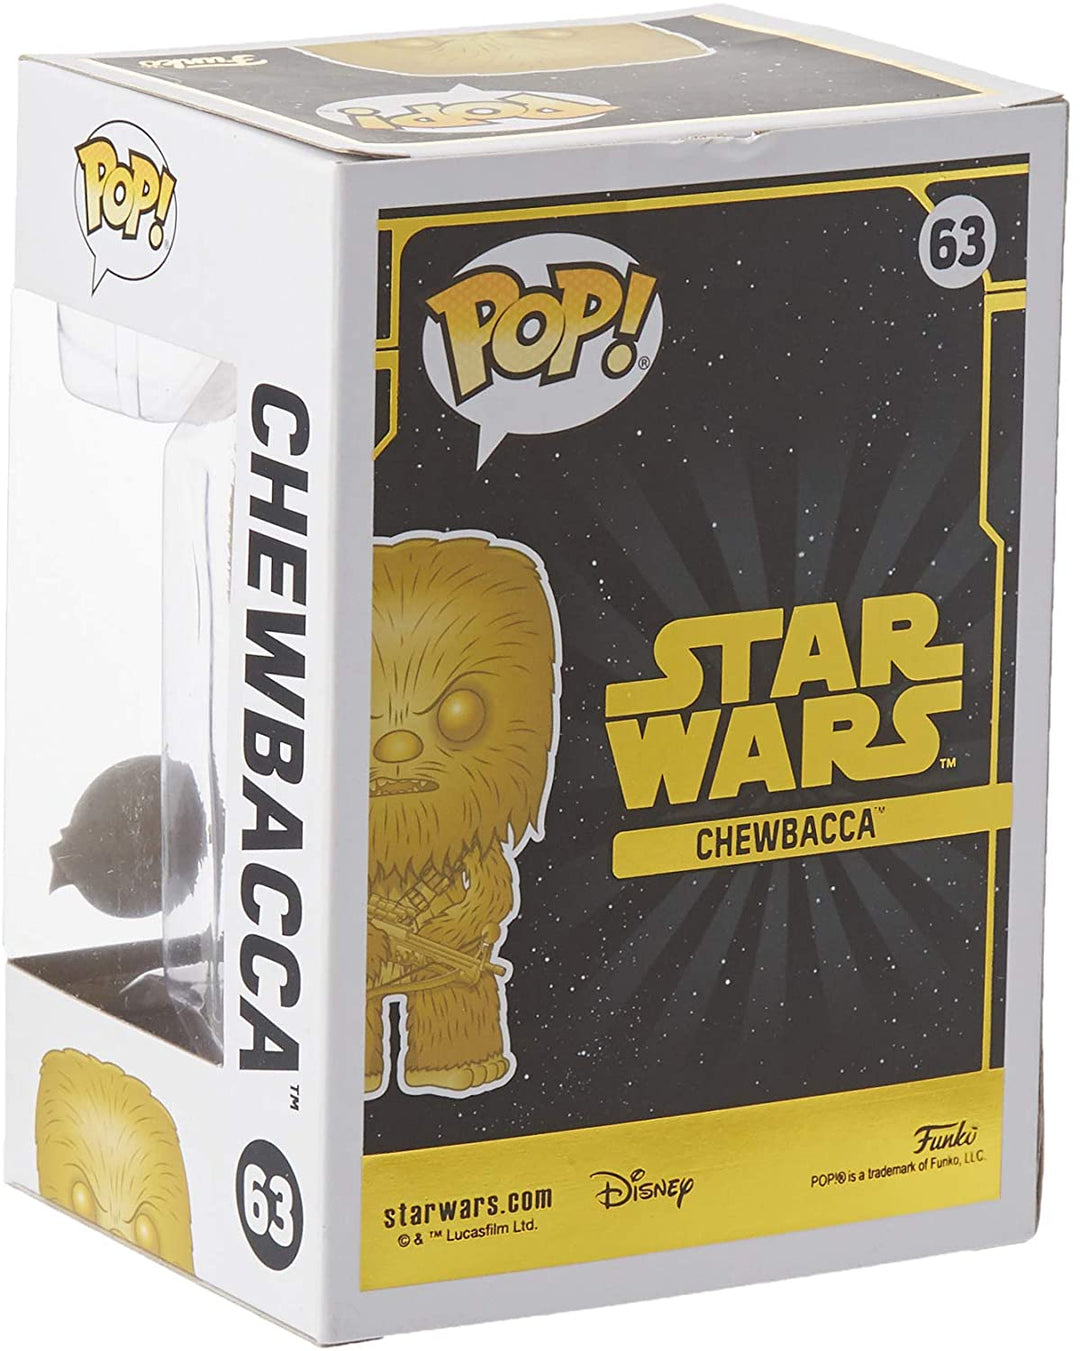 Star Wars Chewbacca excluye Funko 43023 Pop! Vinilo # 63